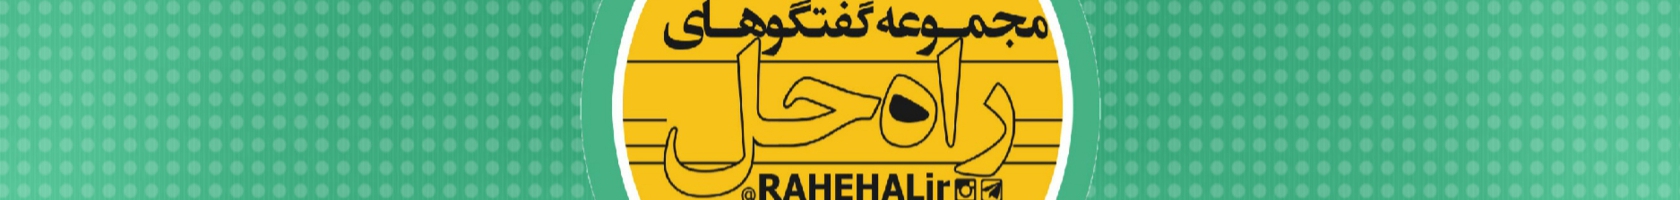  Rahehalir